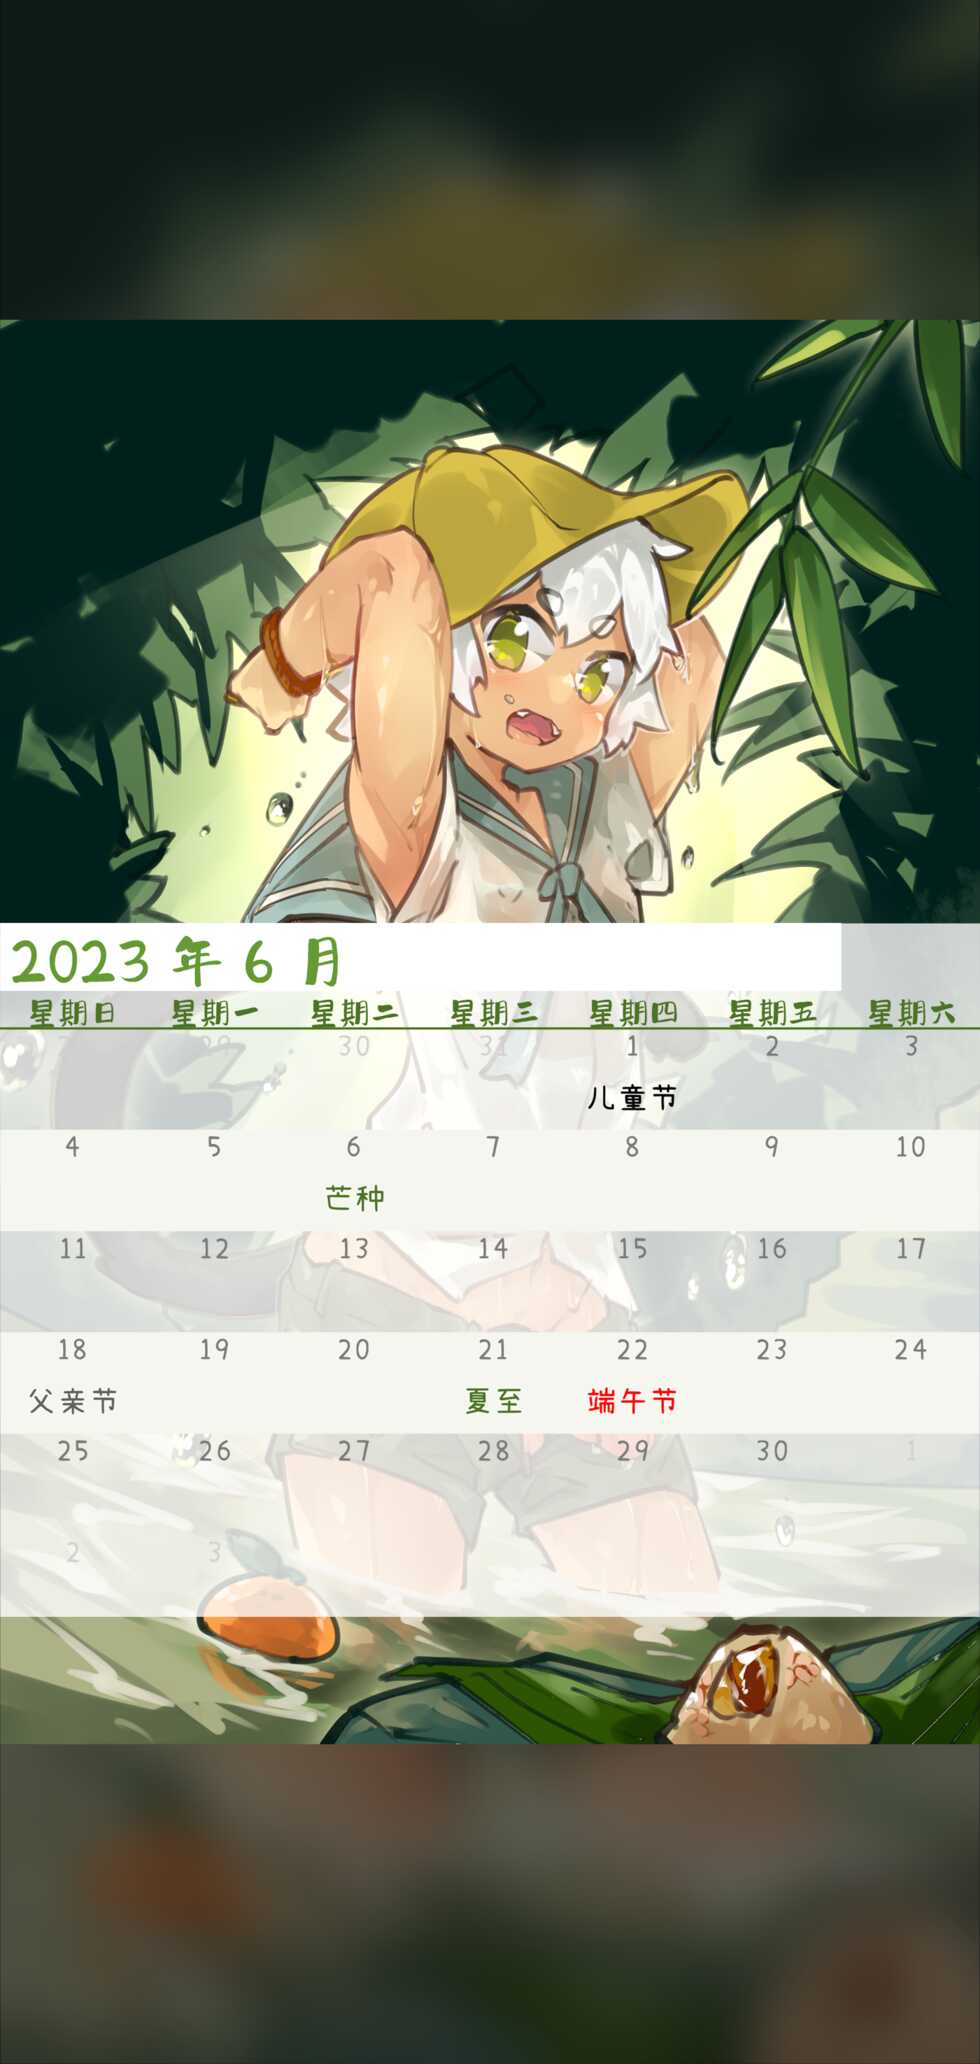 [Suka Genmei] Luo Xiaohei Calendar - Page 9